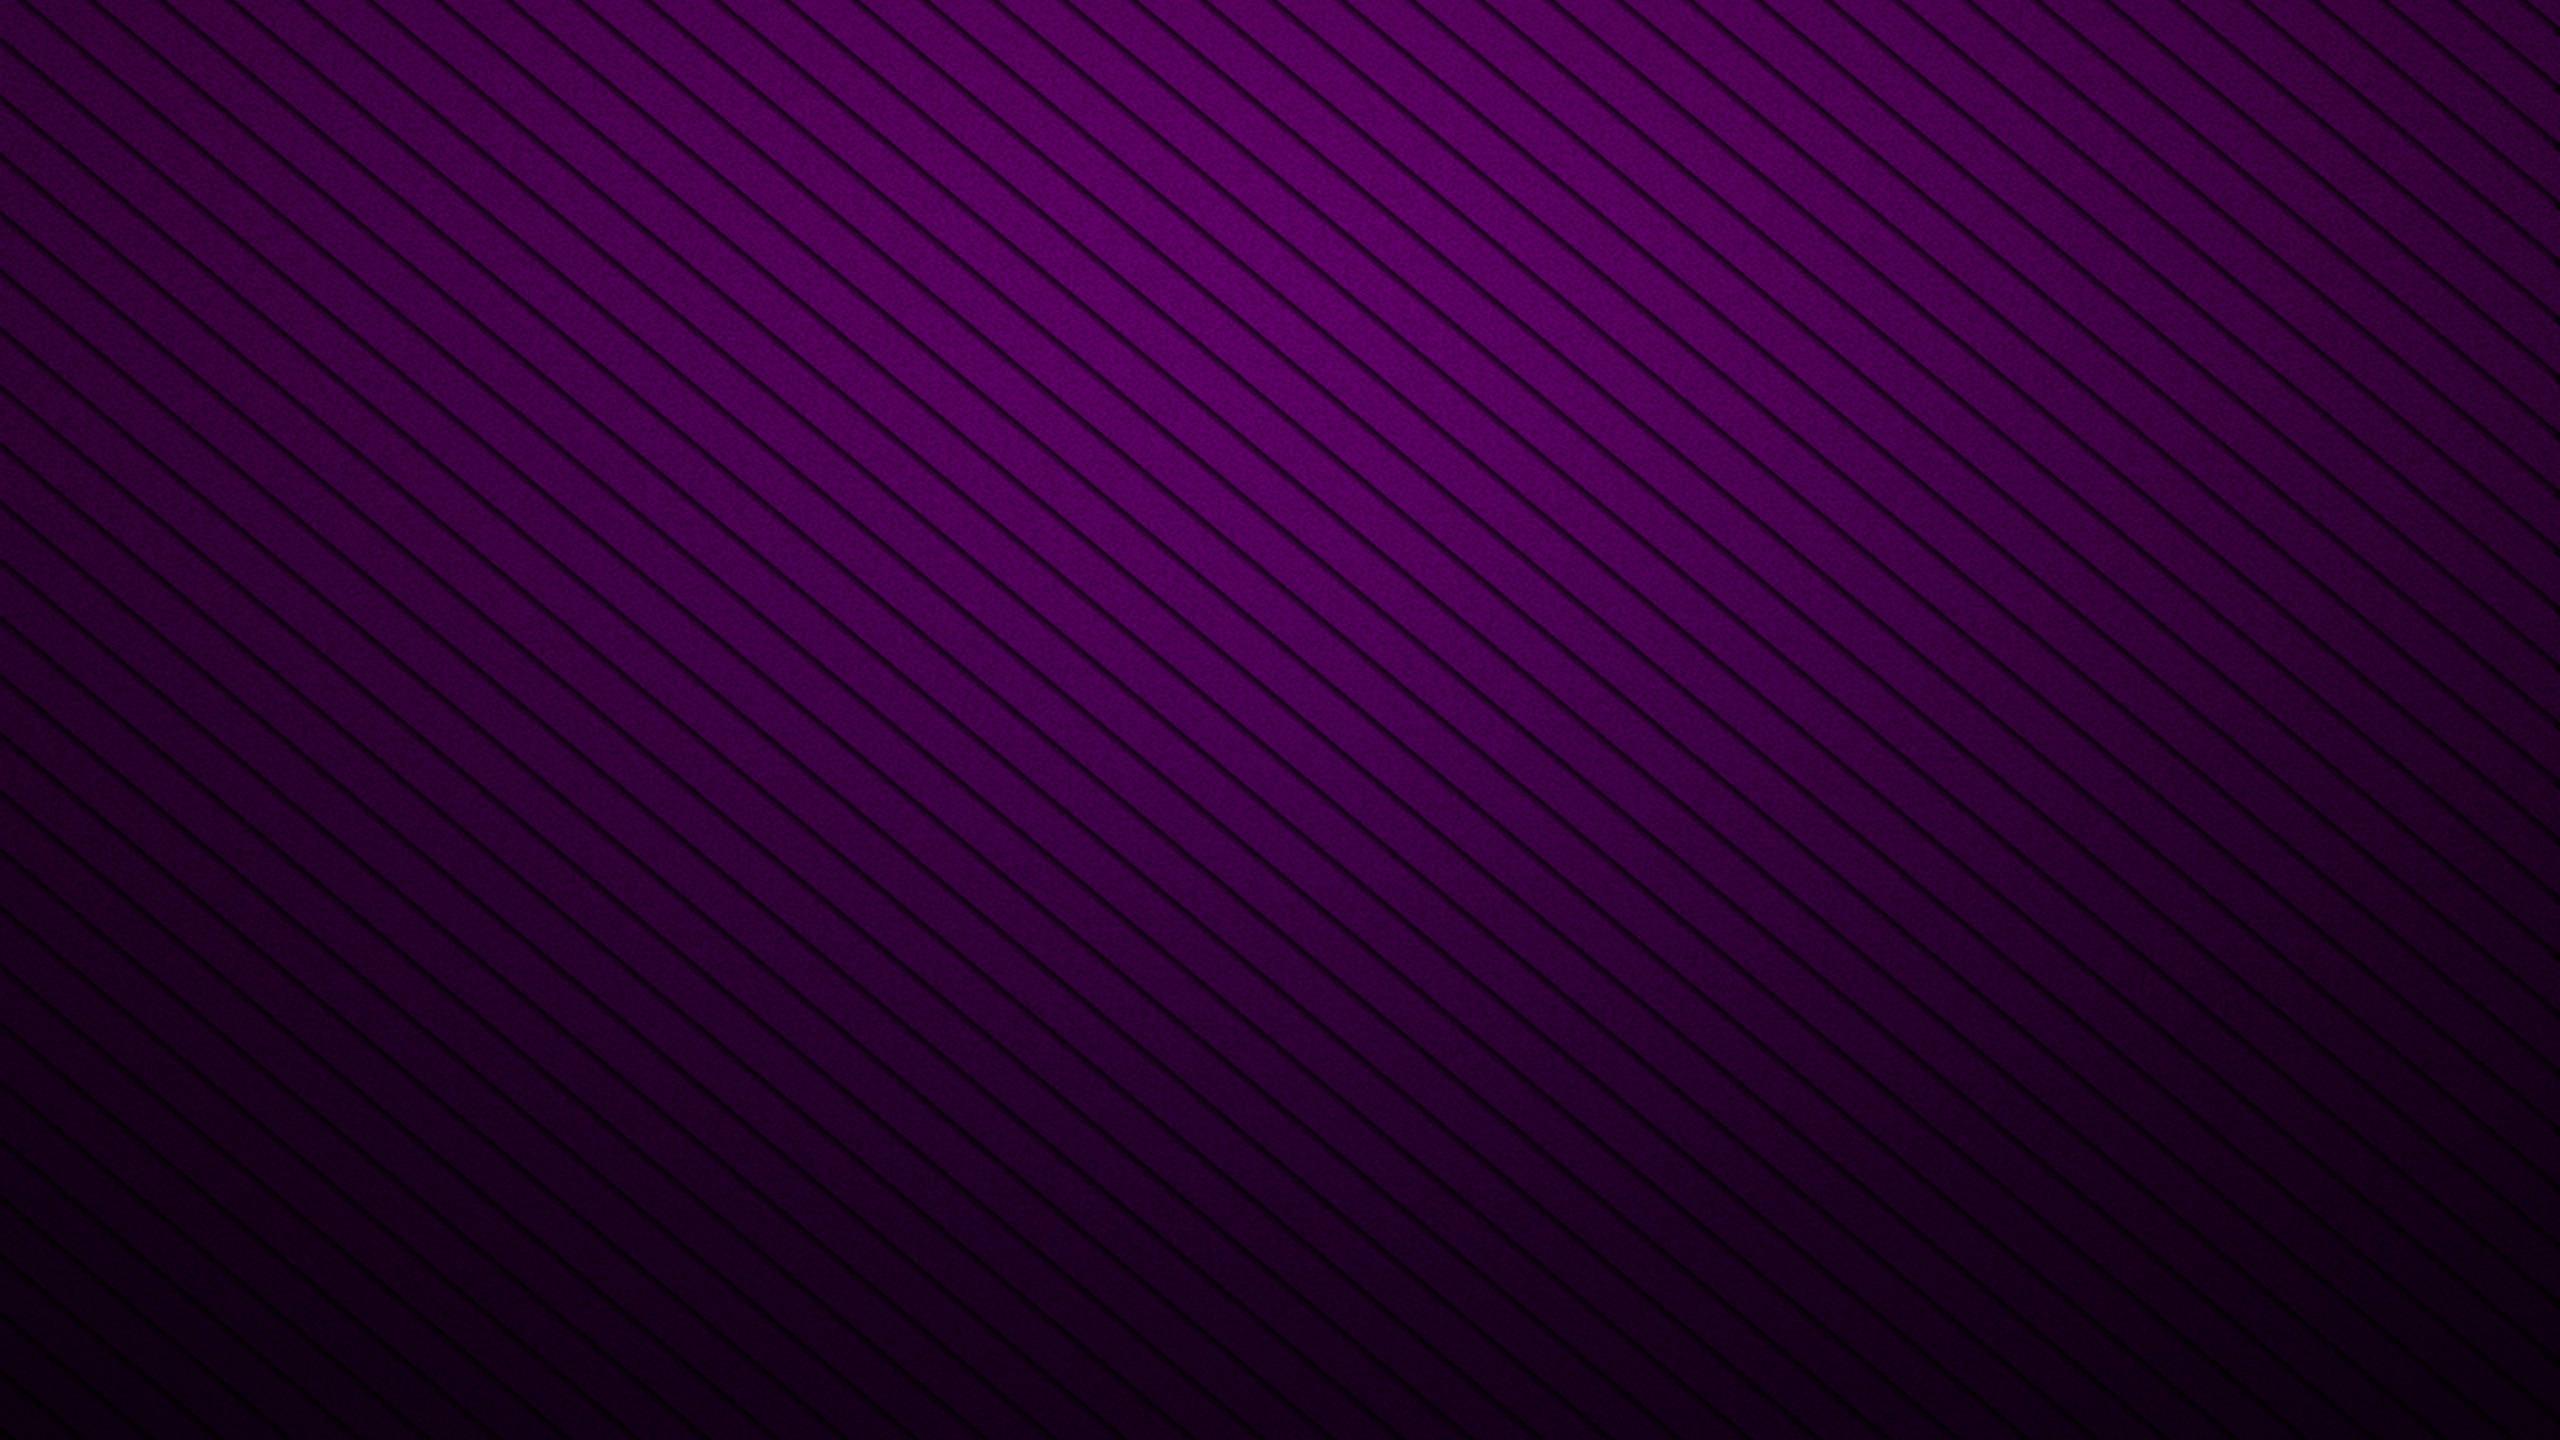 dark purple background design